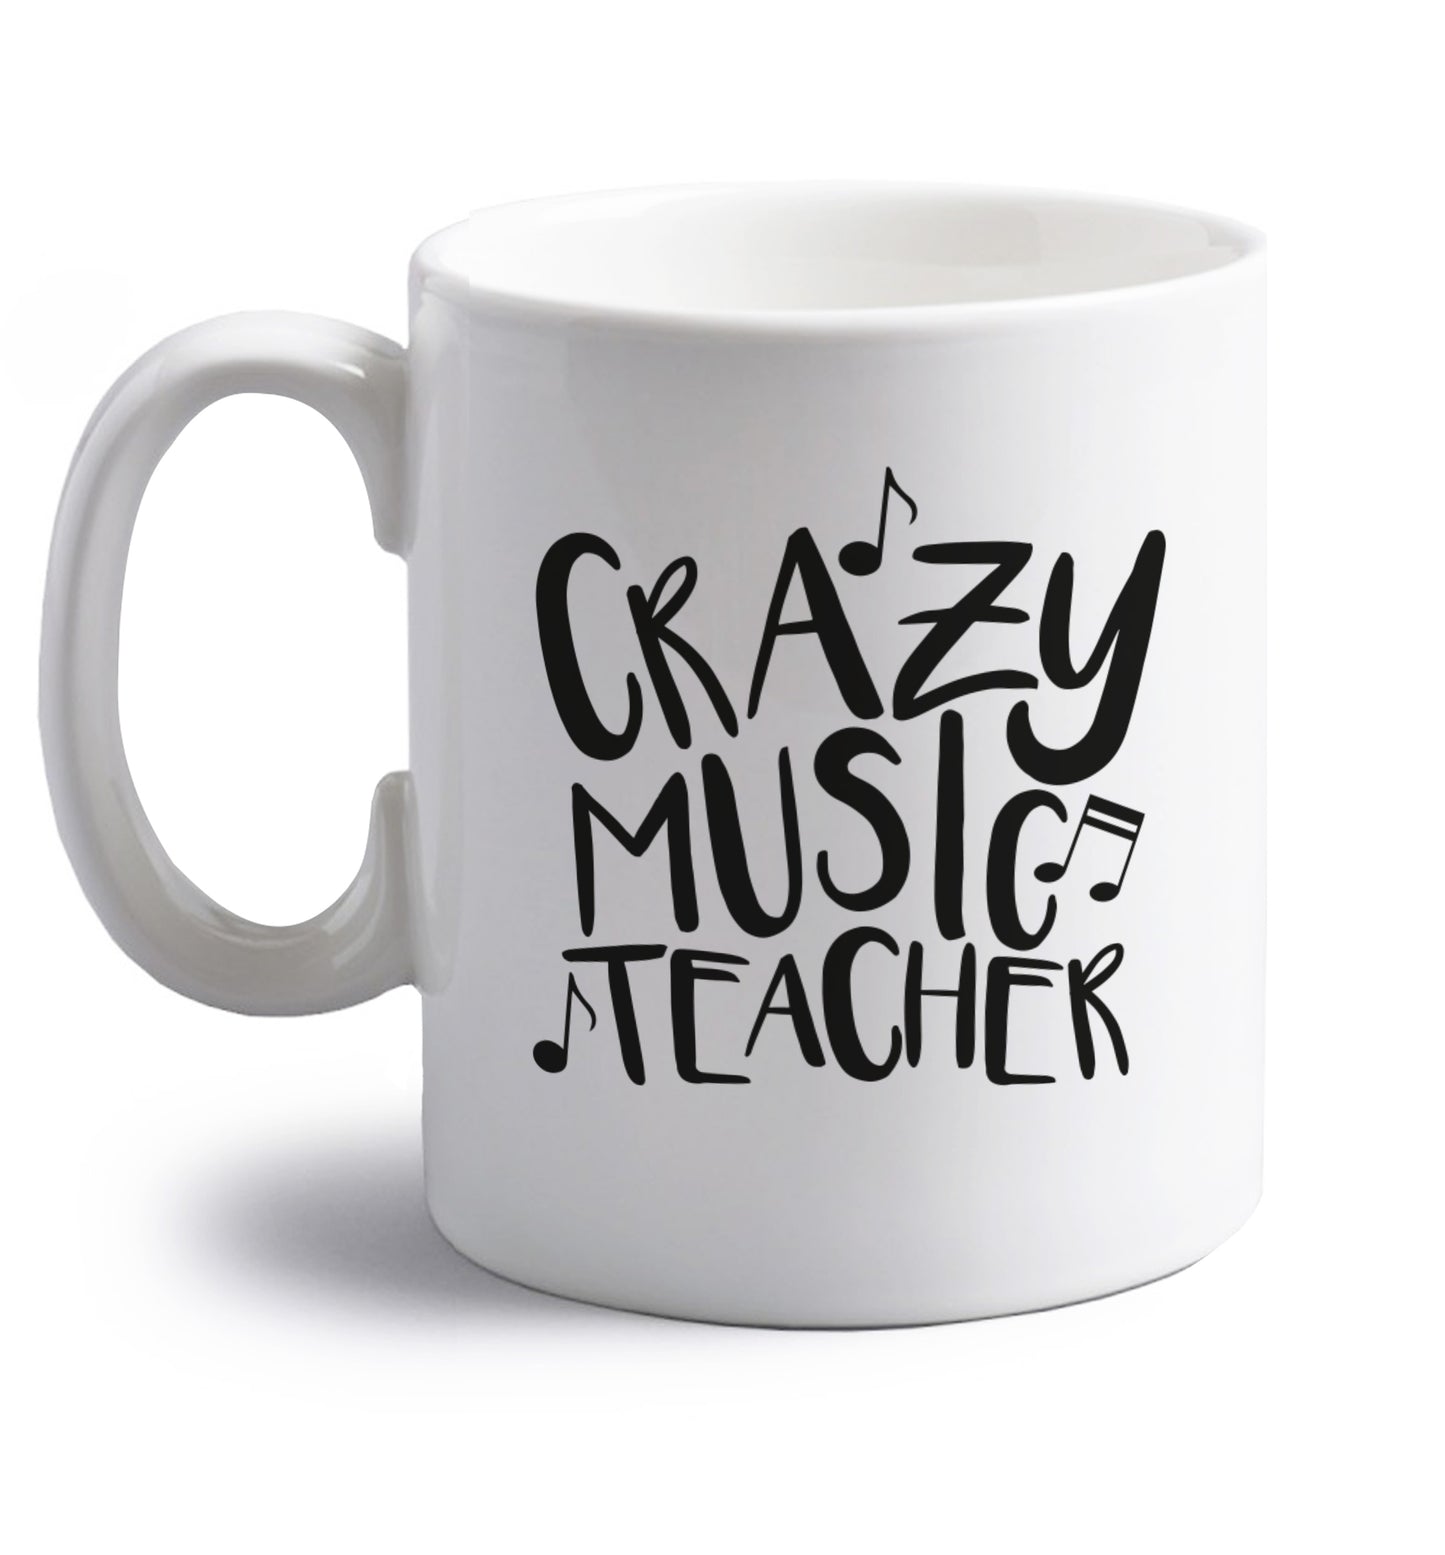 Crazy music teacher right handed white ceramic mug 